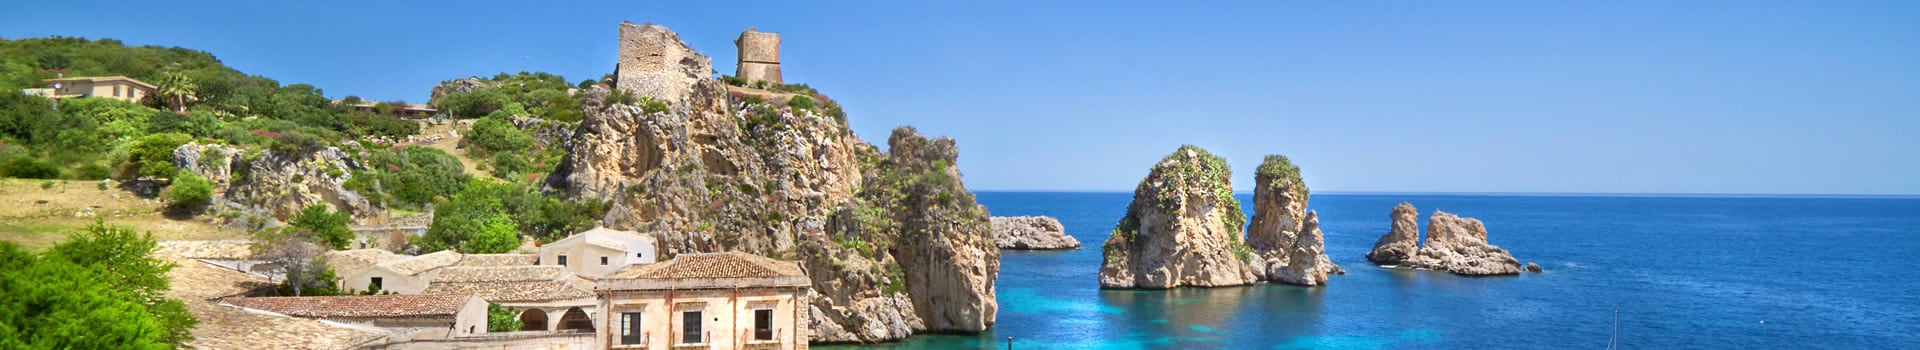 Biglietti da Traghetto e Navi per Sicilia